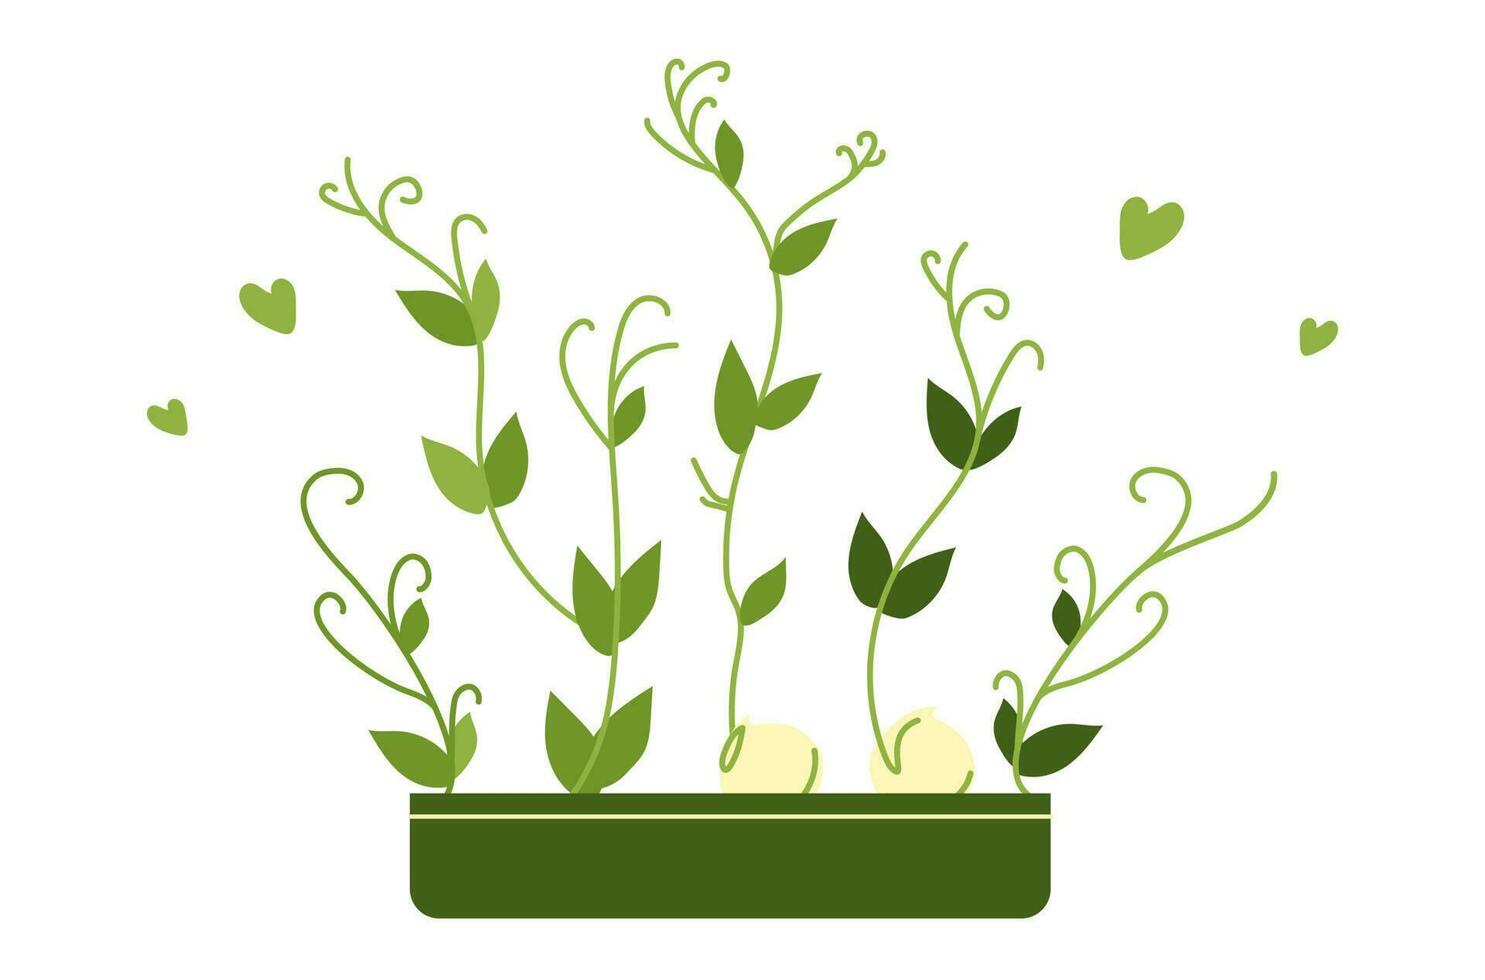 Microgreen peas in a pot vector